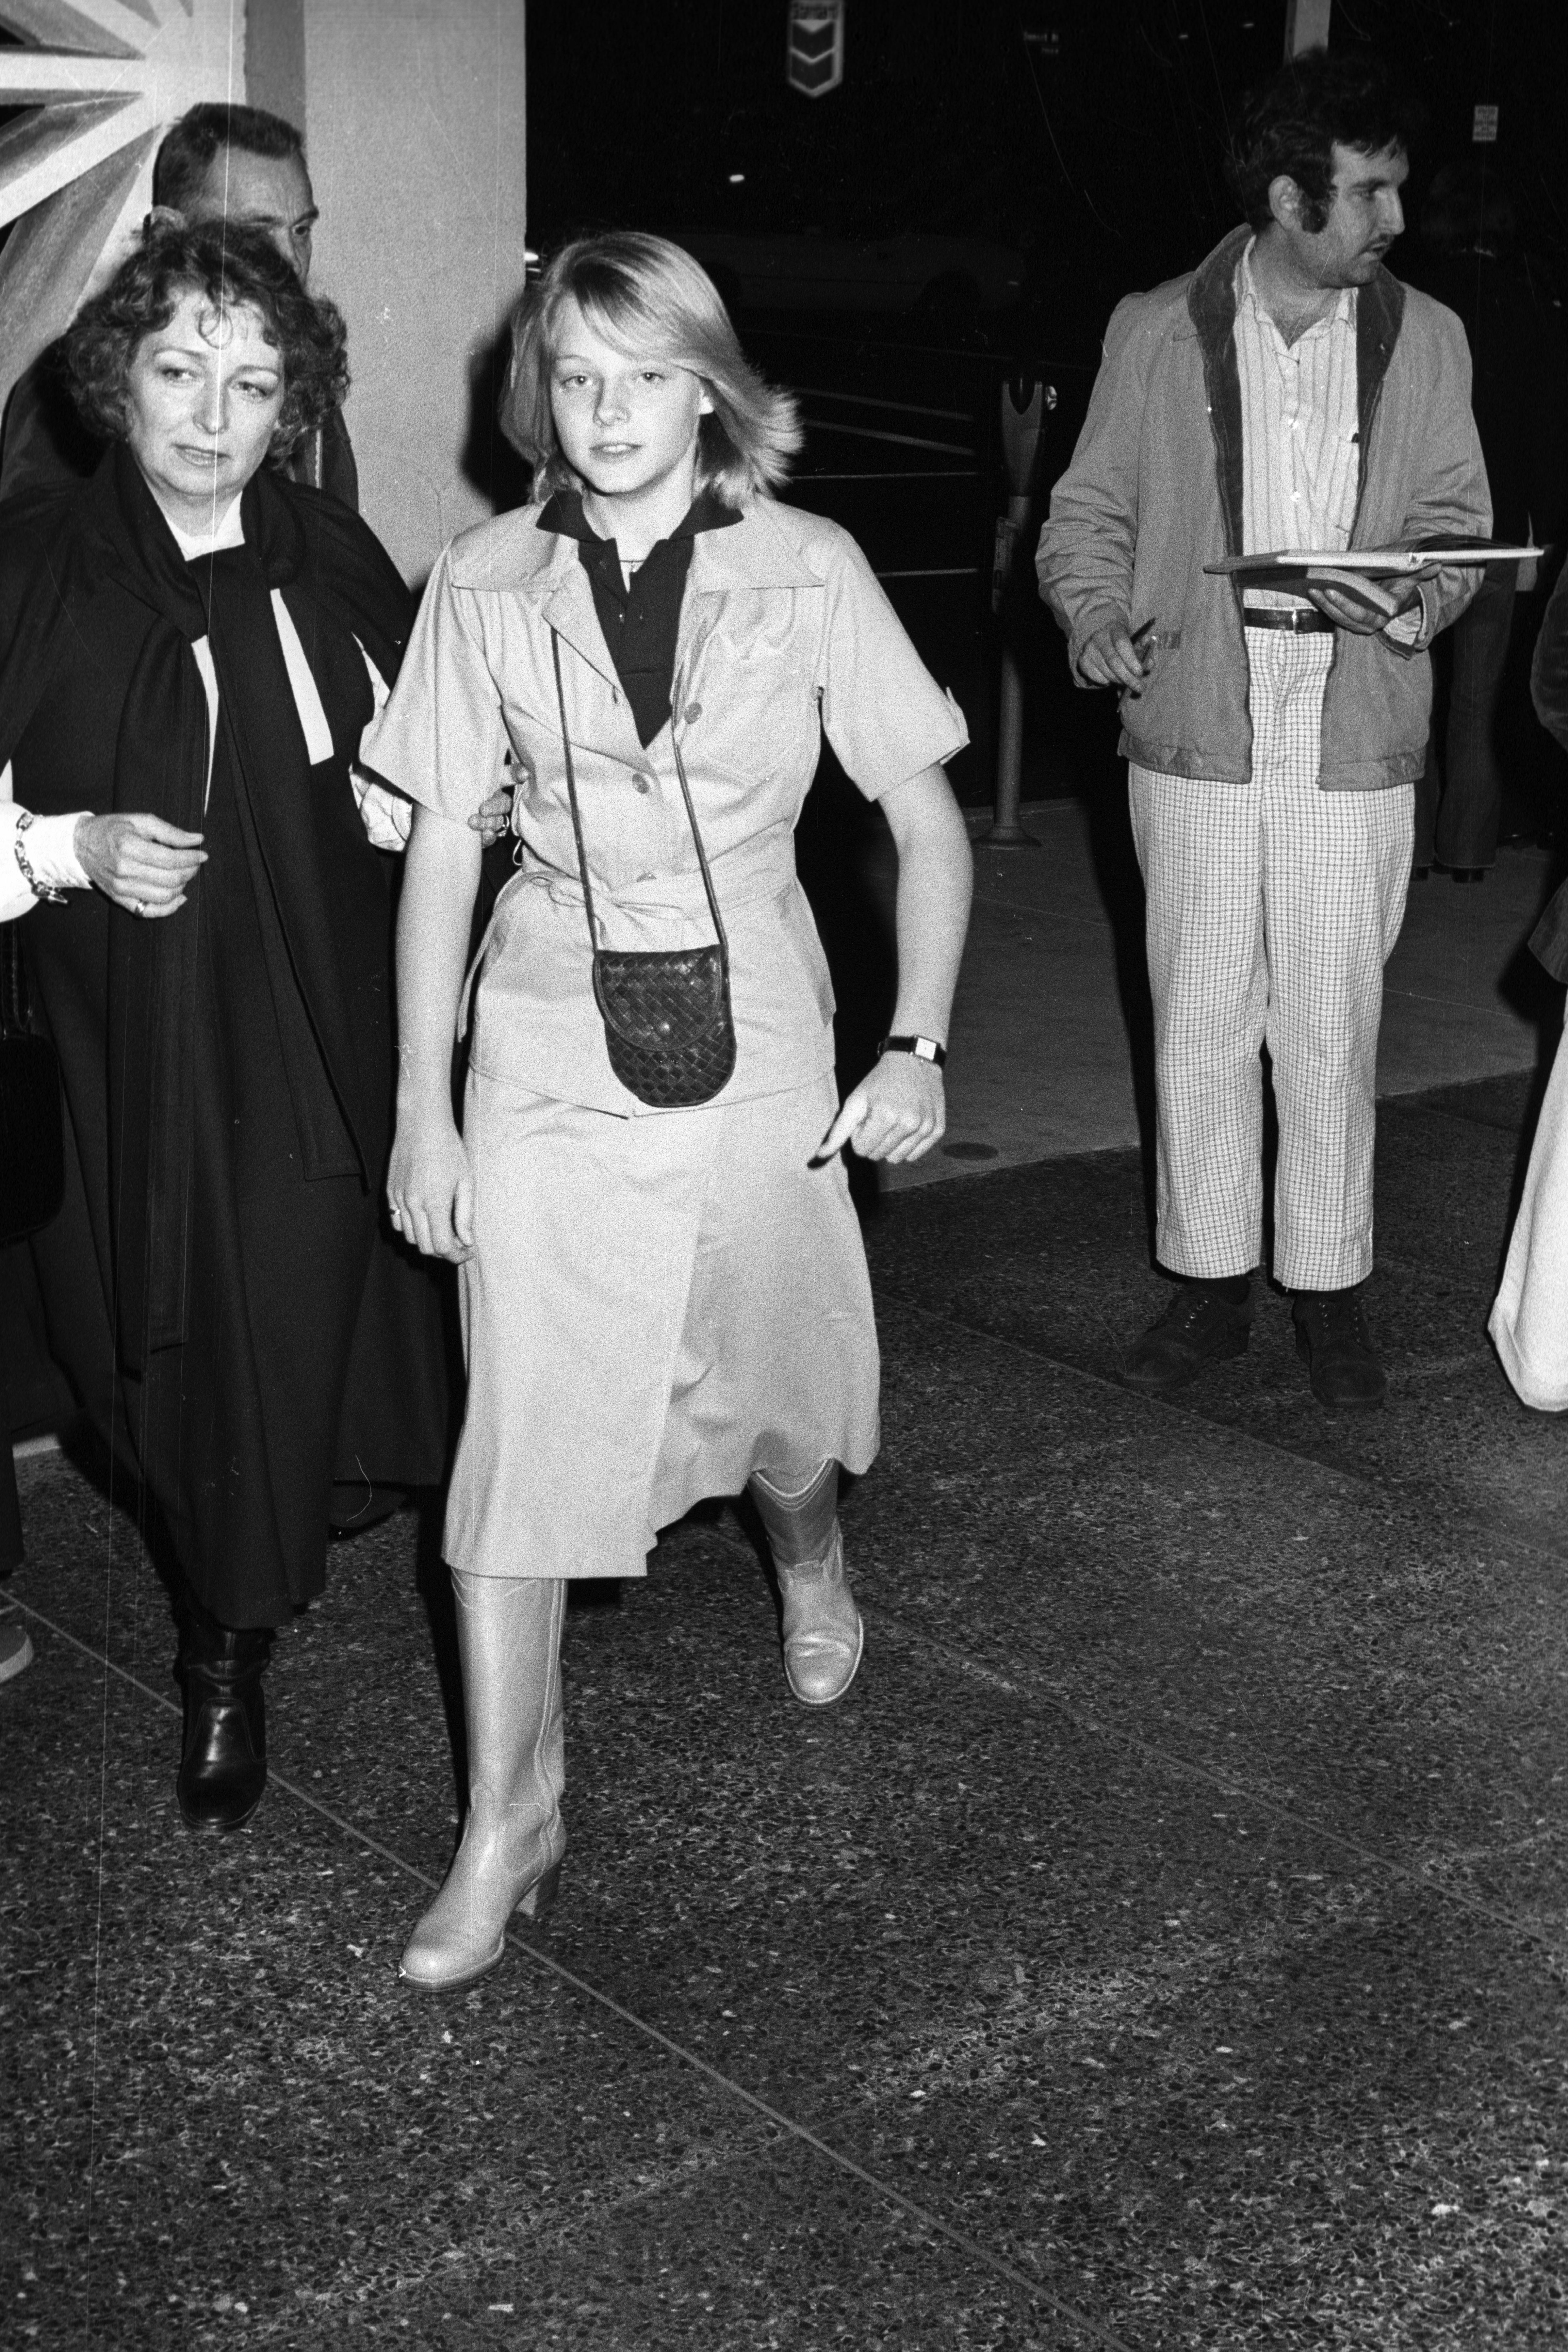 Evelyn "Brandy" Foster, Jodie Foster y un miembro del equipo en un preestreno de "Taxi Driver" en el Gremio de Directores de Hollywood en los años 70 | Foto: Getty Images